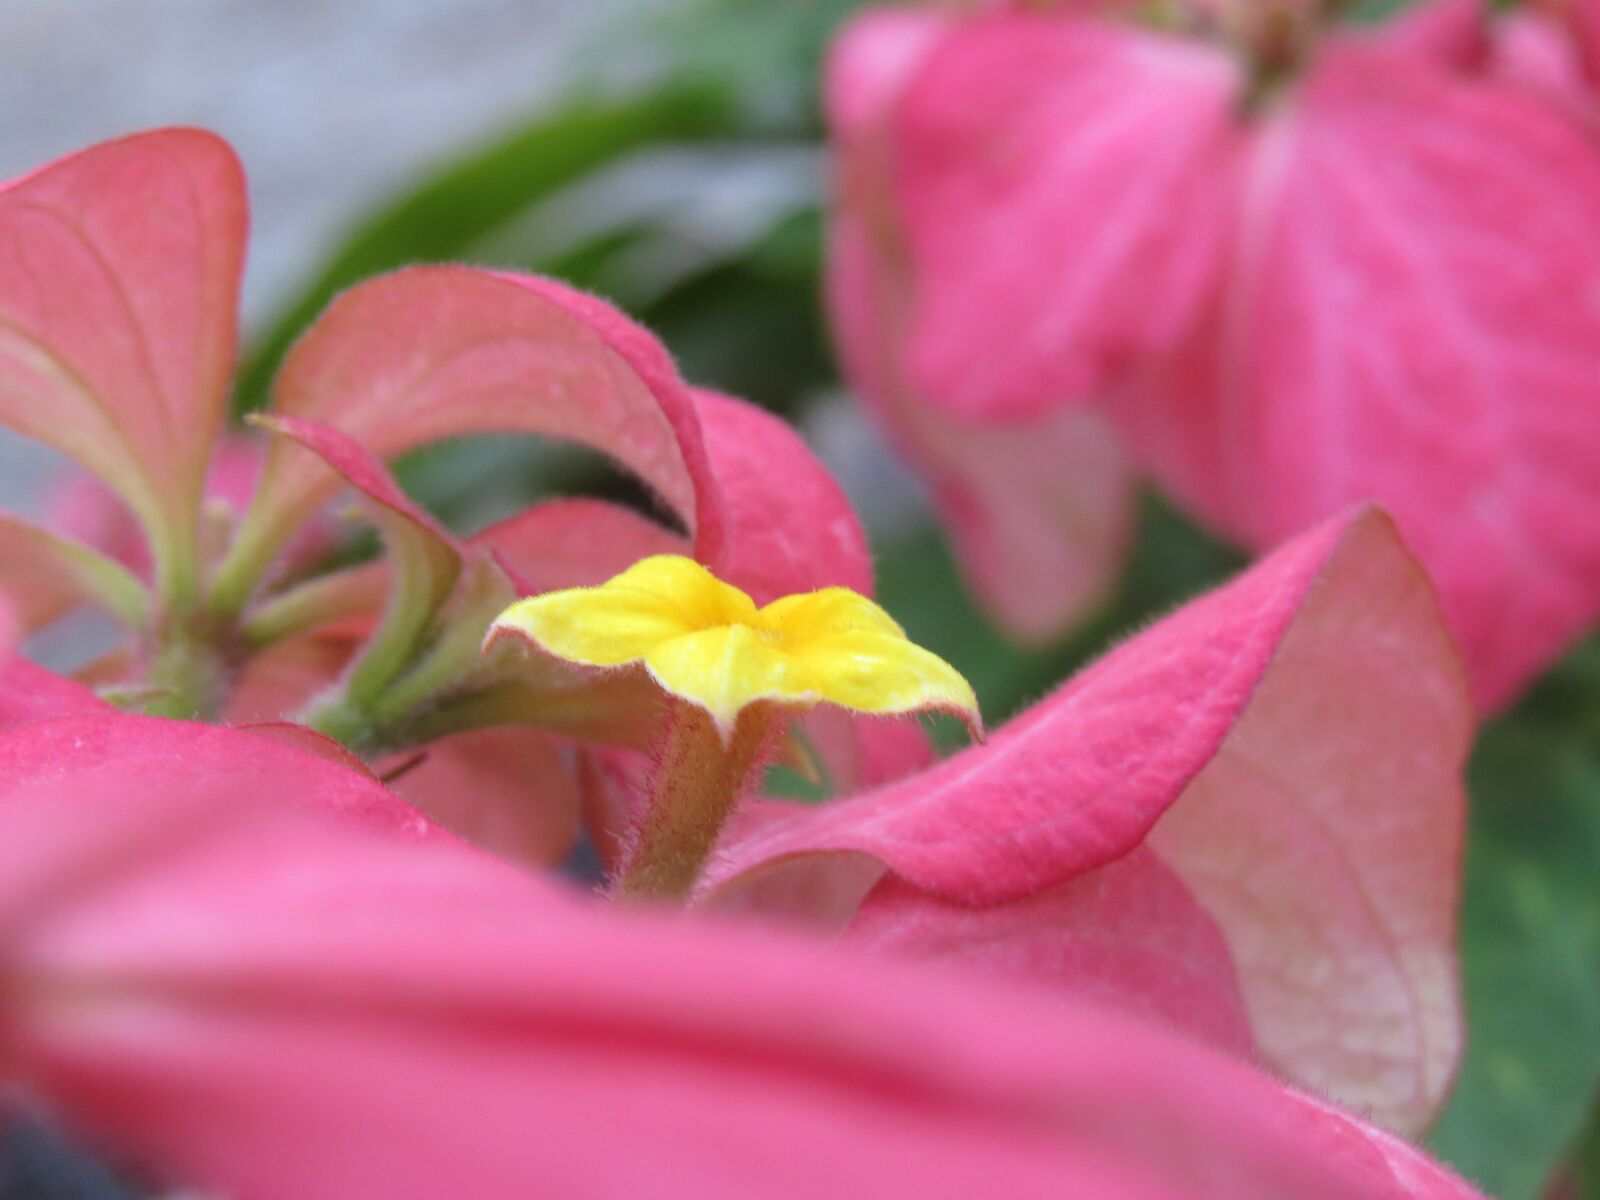 Canon PowerShot SX50 HS sample photo. Flower, nature, plants photography